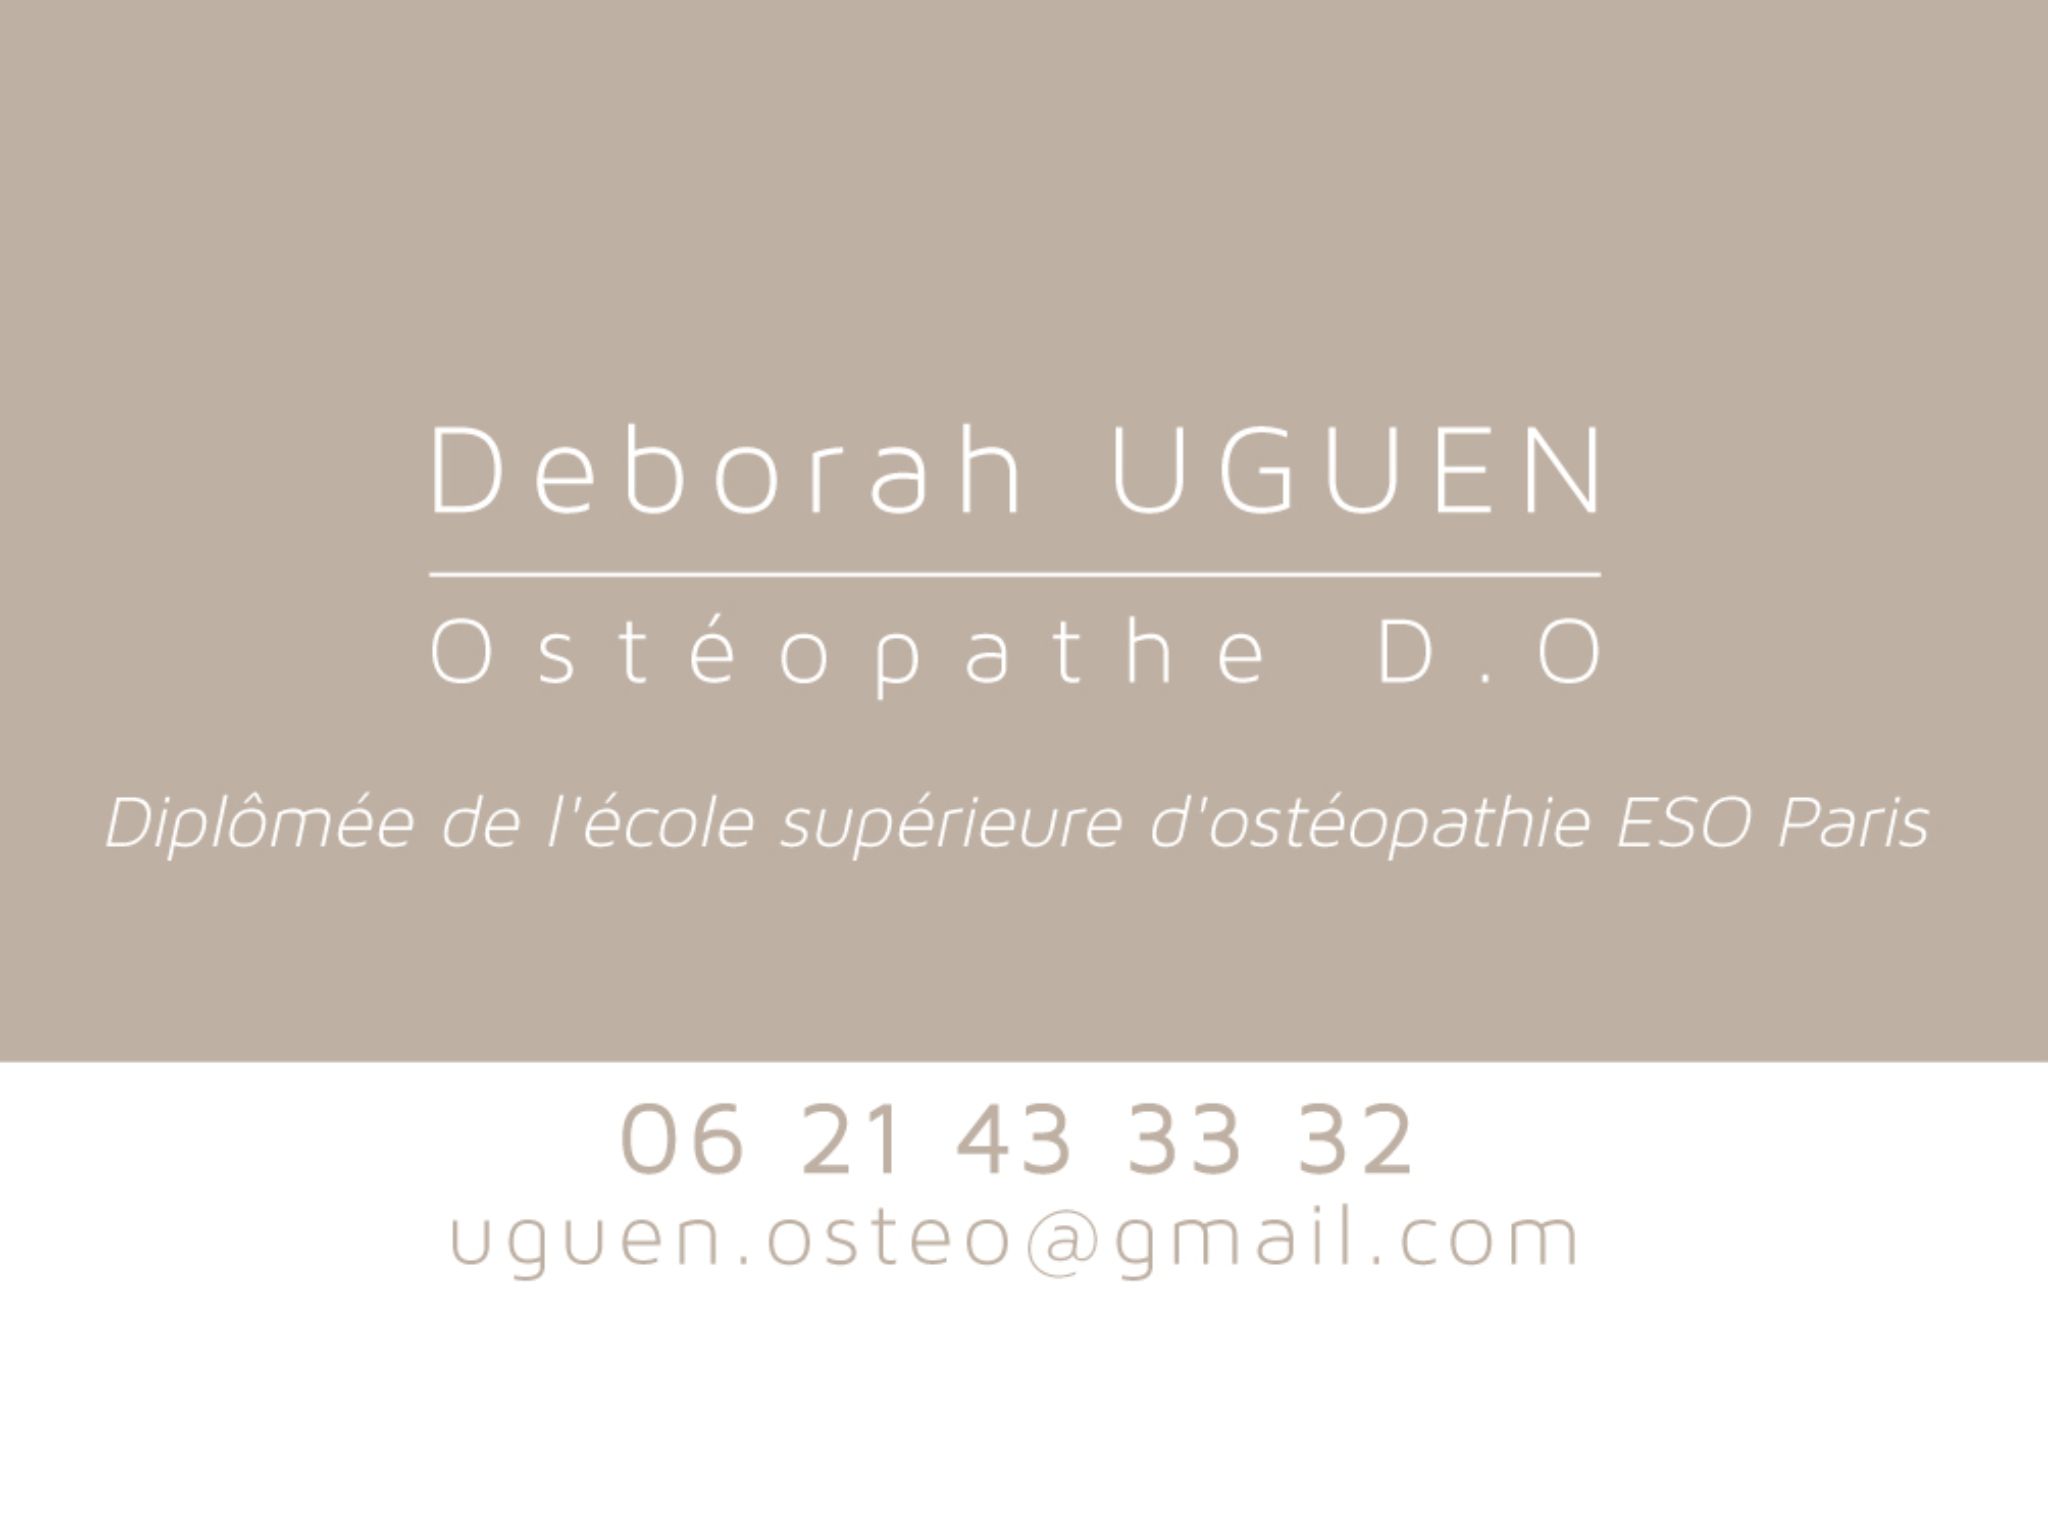  Logo Osteopath : Deborah Uguen